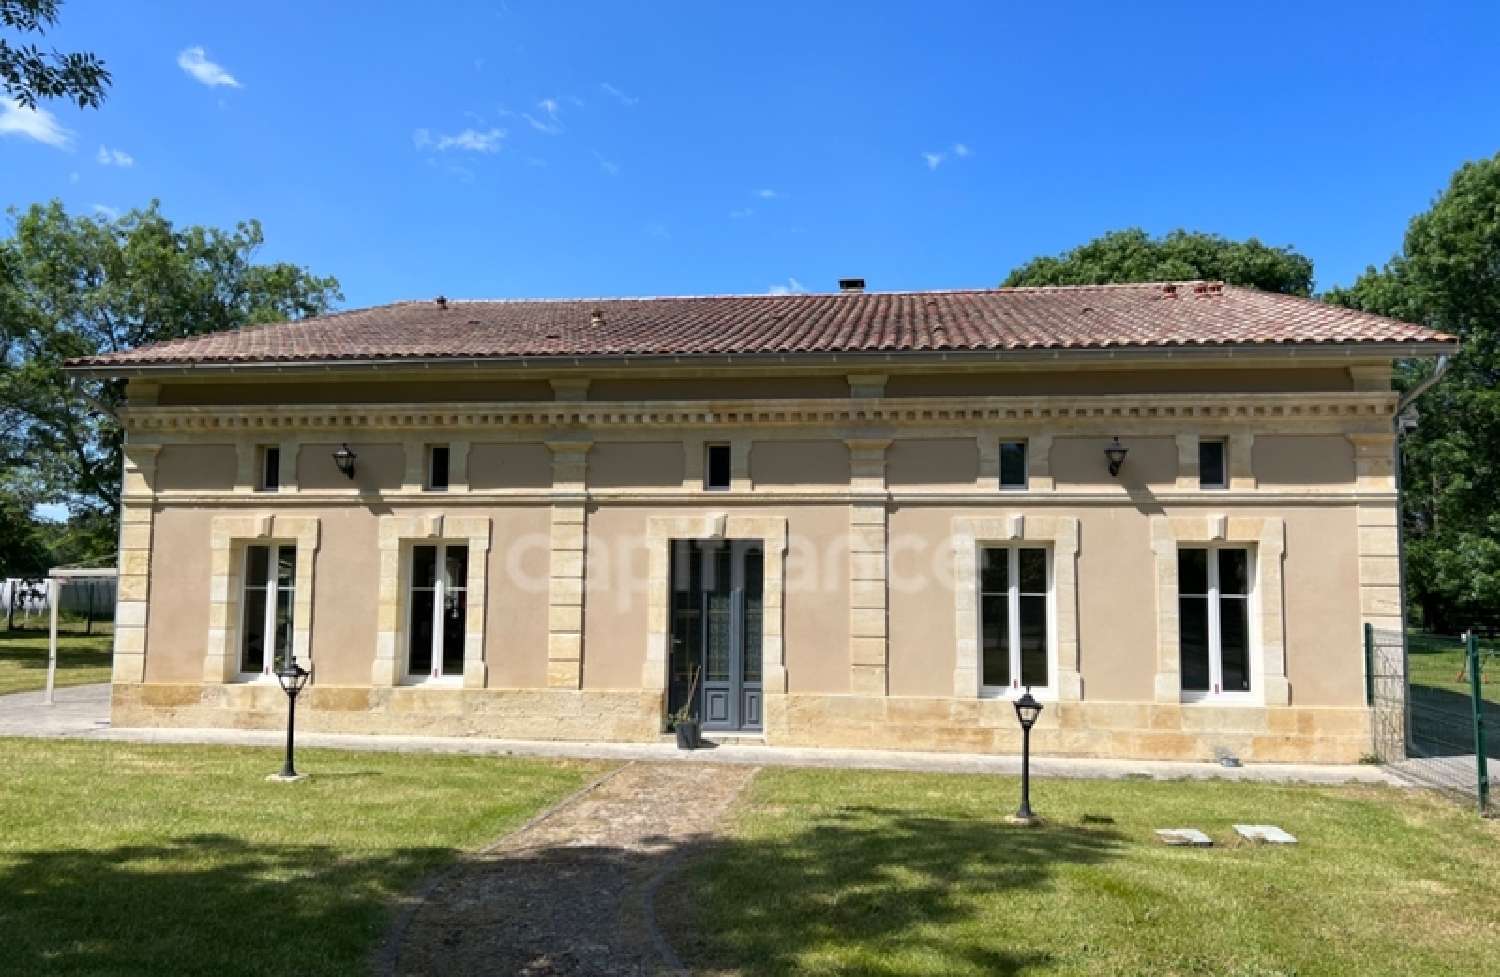  à vendre maison Saint-André-de-Cubzac Gironde 2